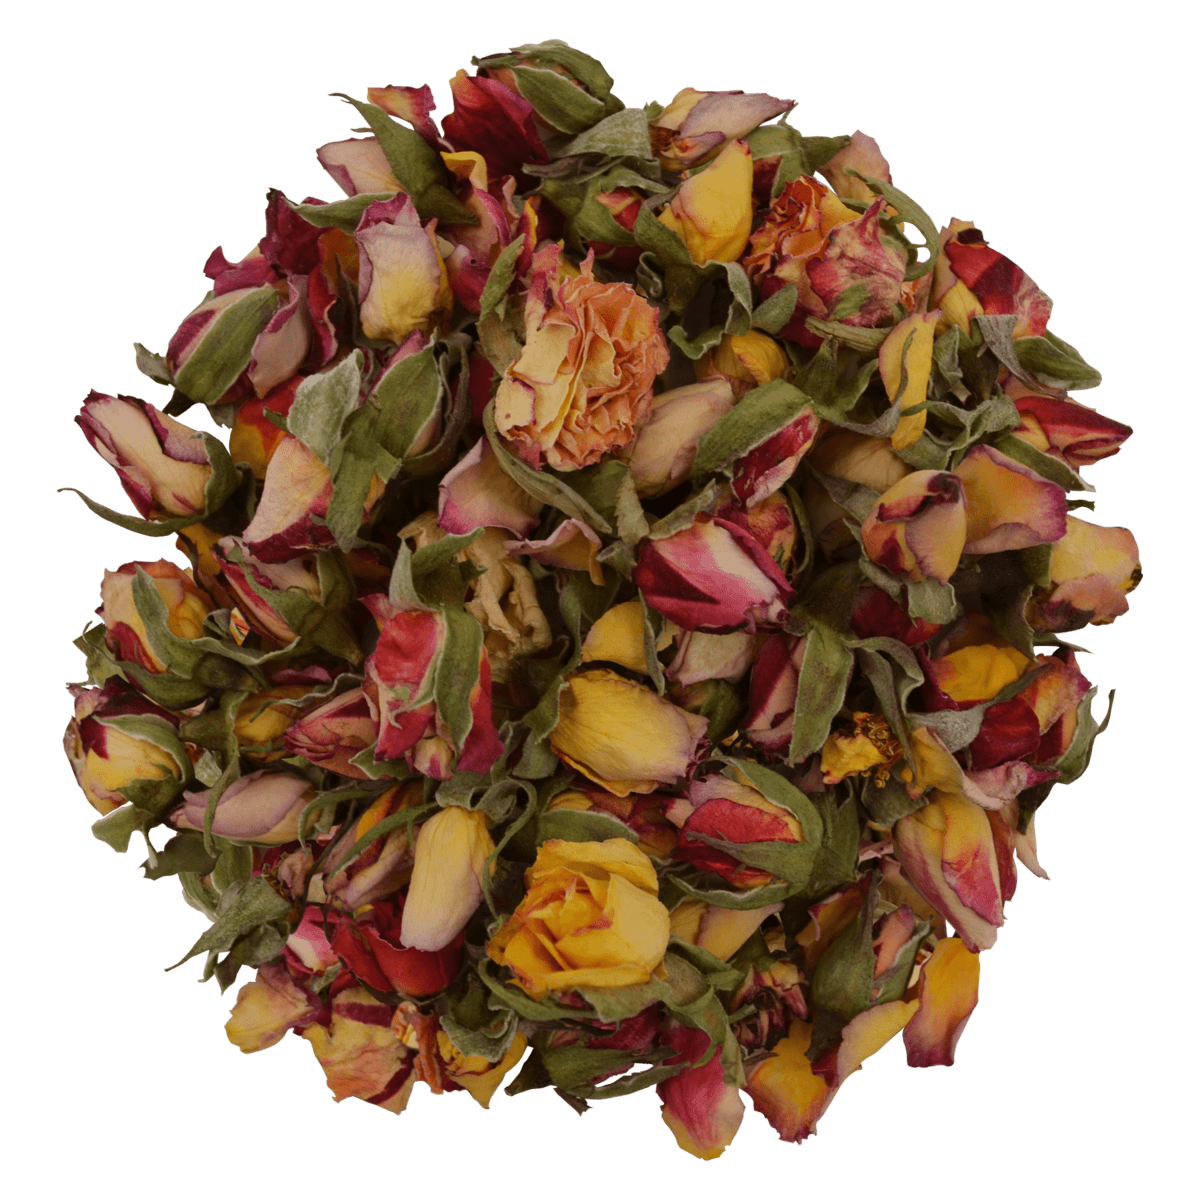 Entdecken Sie unsere hochwertigen Sunset Mix Blumen als essbare Dekoration für Ihre Kuchen und Torten. Unsere essbaren Blumen sind eine wunderschöne Art, um eine besondere Note zu Ihrem Backwerk hinzuzufügen und es in ein leuchtendes Kunstwerk zu verwandeln. Von ROSIE ROSE im Online-Shop kaufen